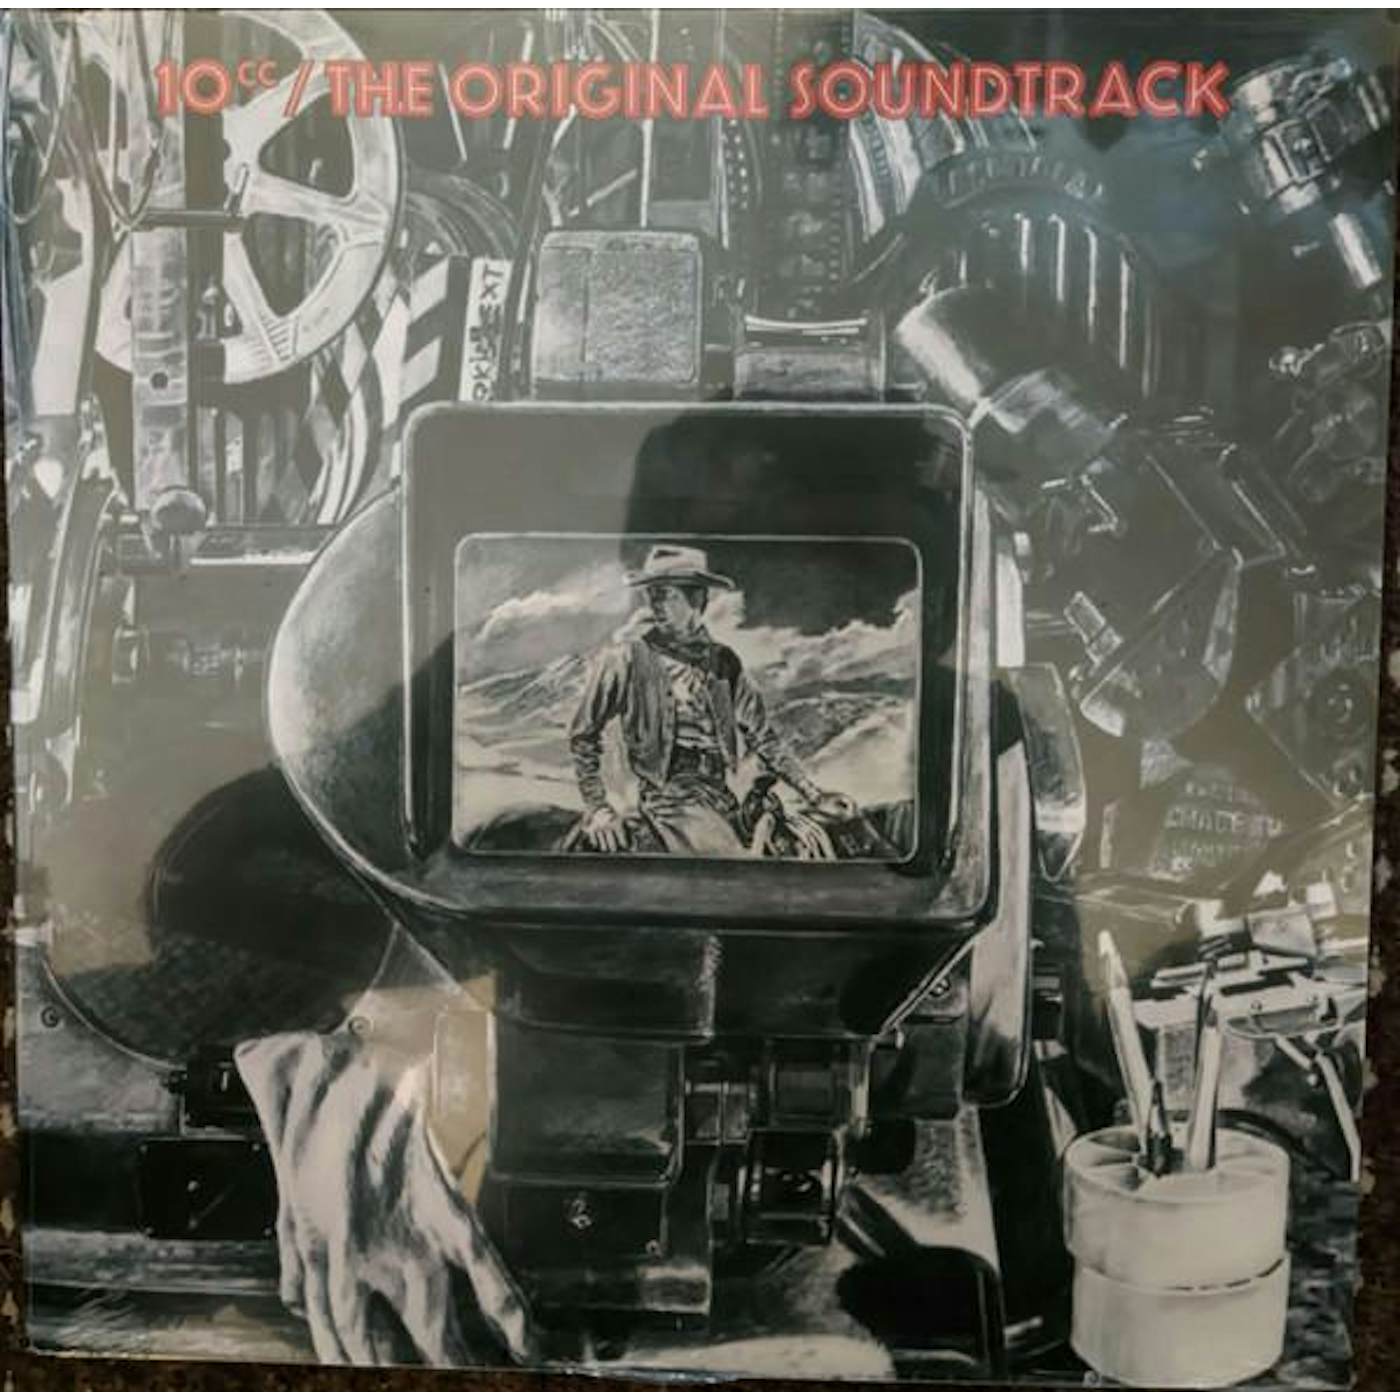 10cc ORIGINAL SOUNDTRACK Vinyl Record